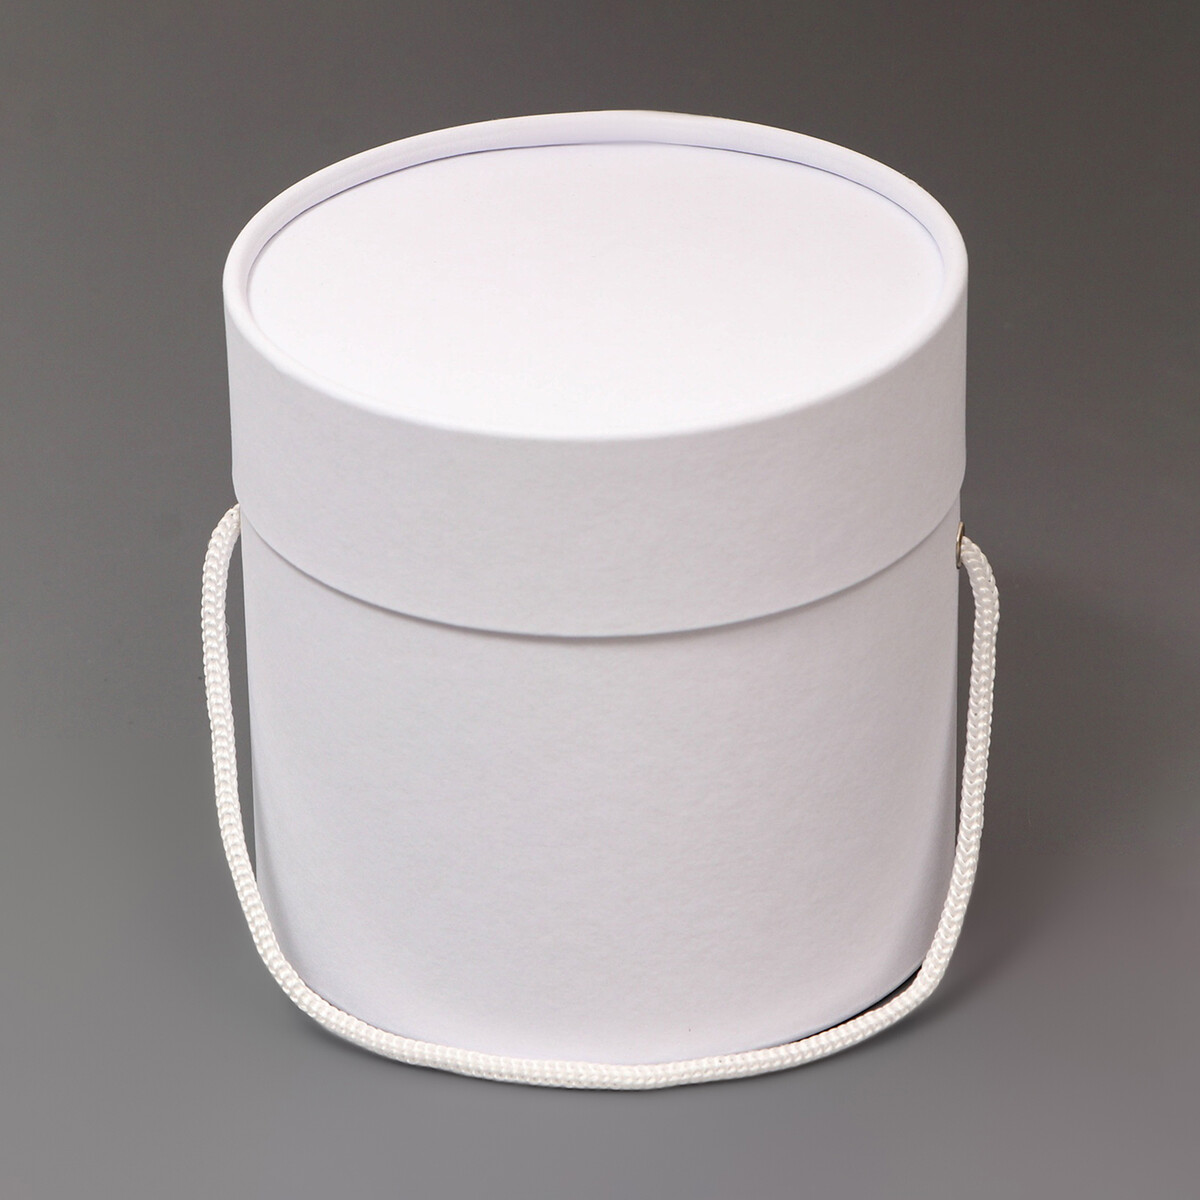 Подарочная коробка, круглая, белая,с шнурком, 12 х 12 см тарелка суповая стекло 20 см круглая lillie luminarc q8716 белая